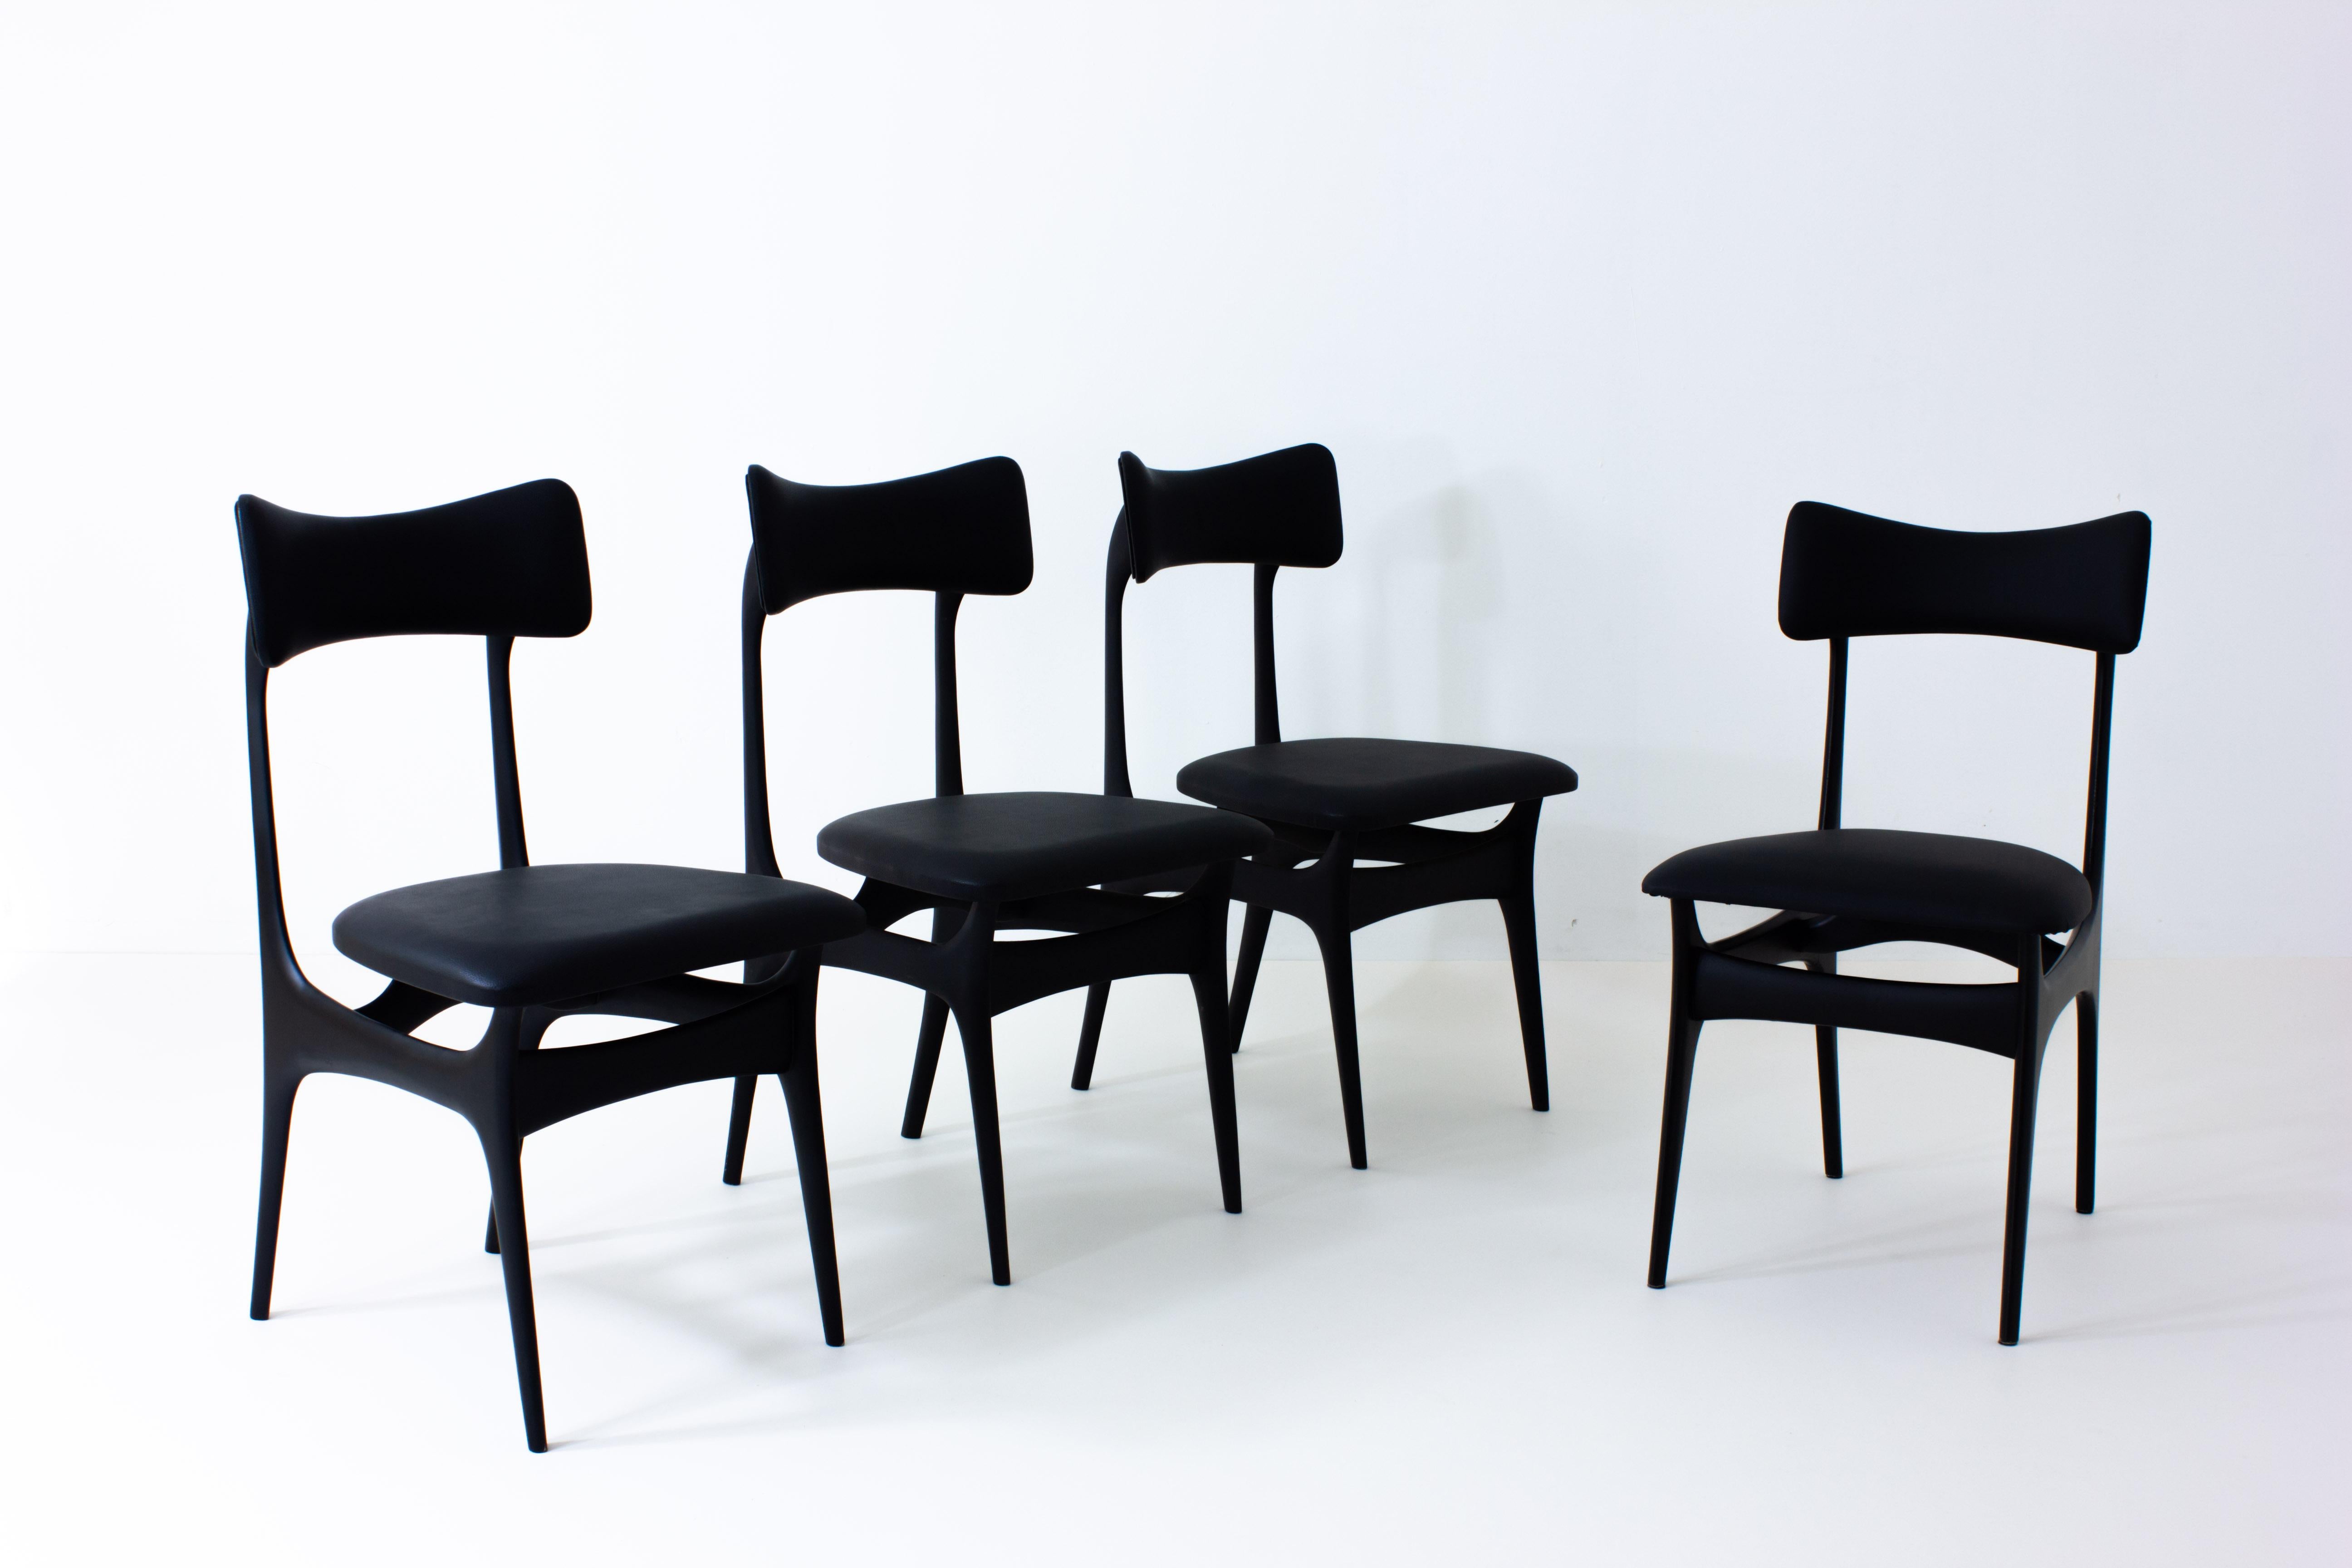 Cet étonnant ensemble de chaises de salle à manger Alfred Hendrickx Design/One a été conçu pour Belform en 1958. Presque aucune ligne droite n'est visible sur ces chaises, ce qui crée un jeu intéressant entre l'objet et l'arrière-plan, en